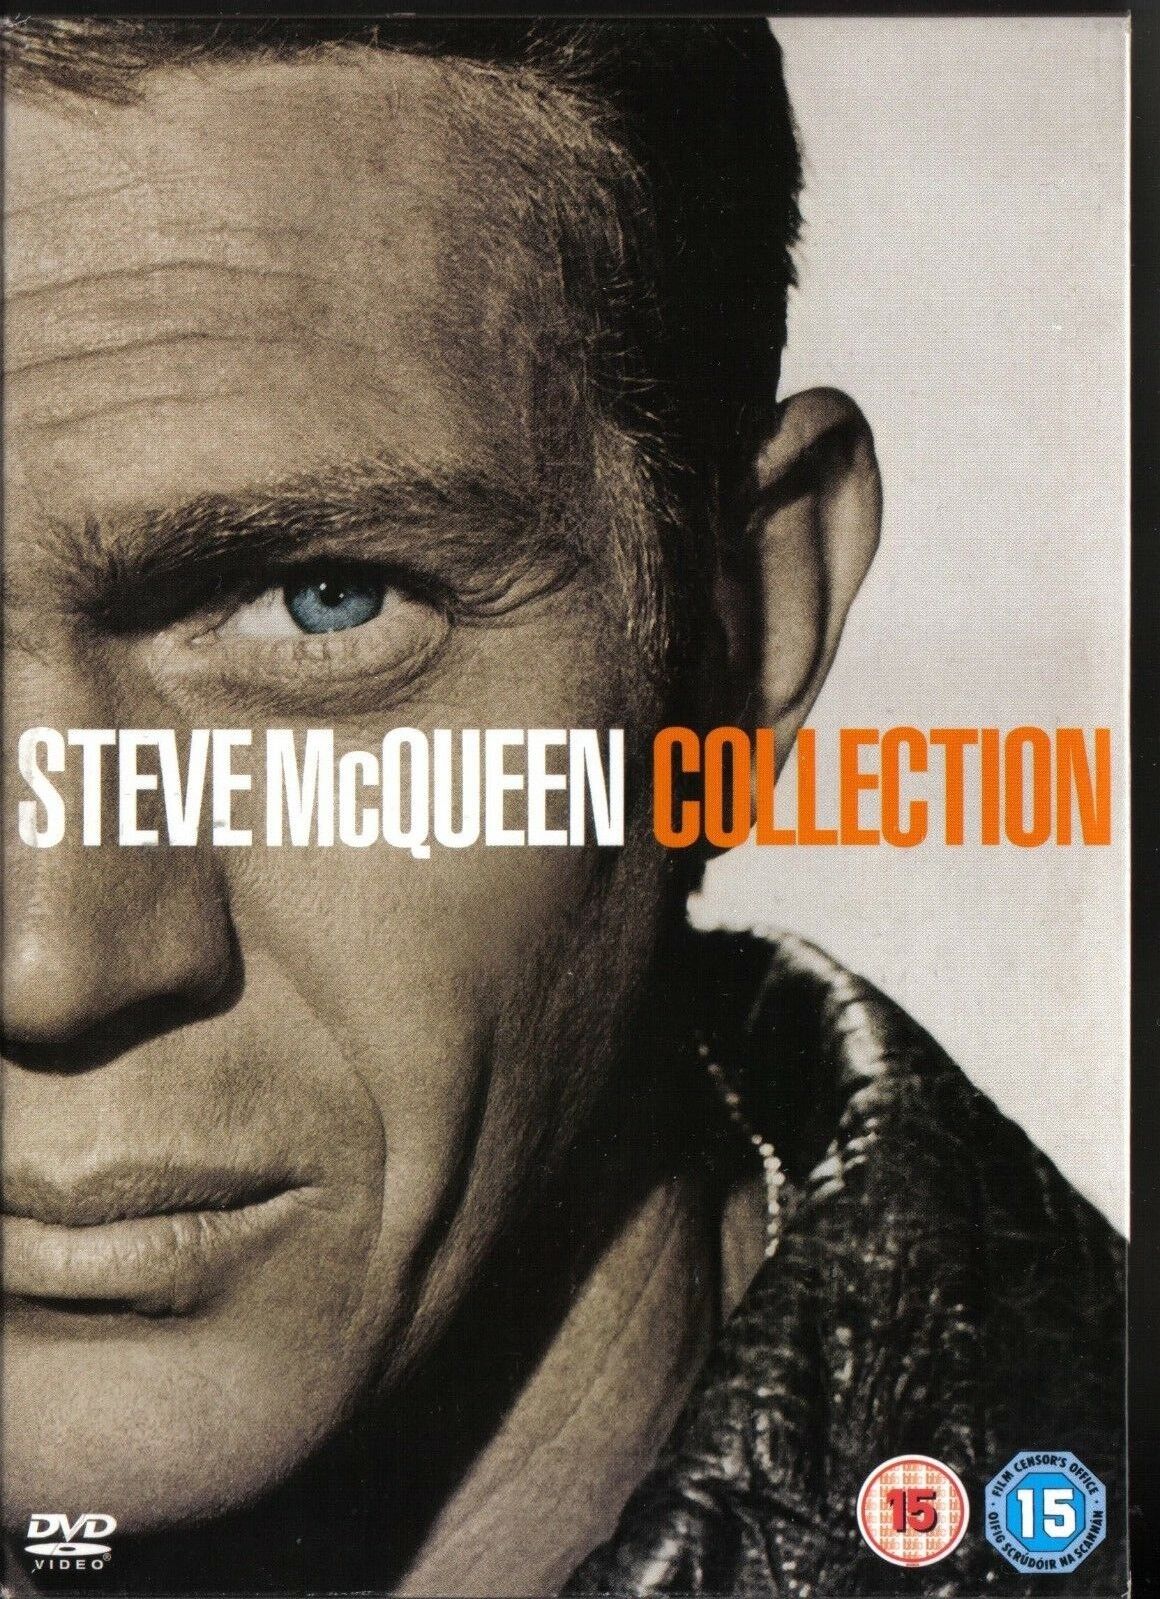 STEVE McQUEEN - COLLECTION. Pack de 4 dvd/s. Formato slim. Peliculas